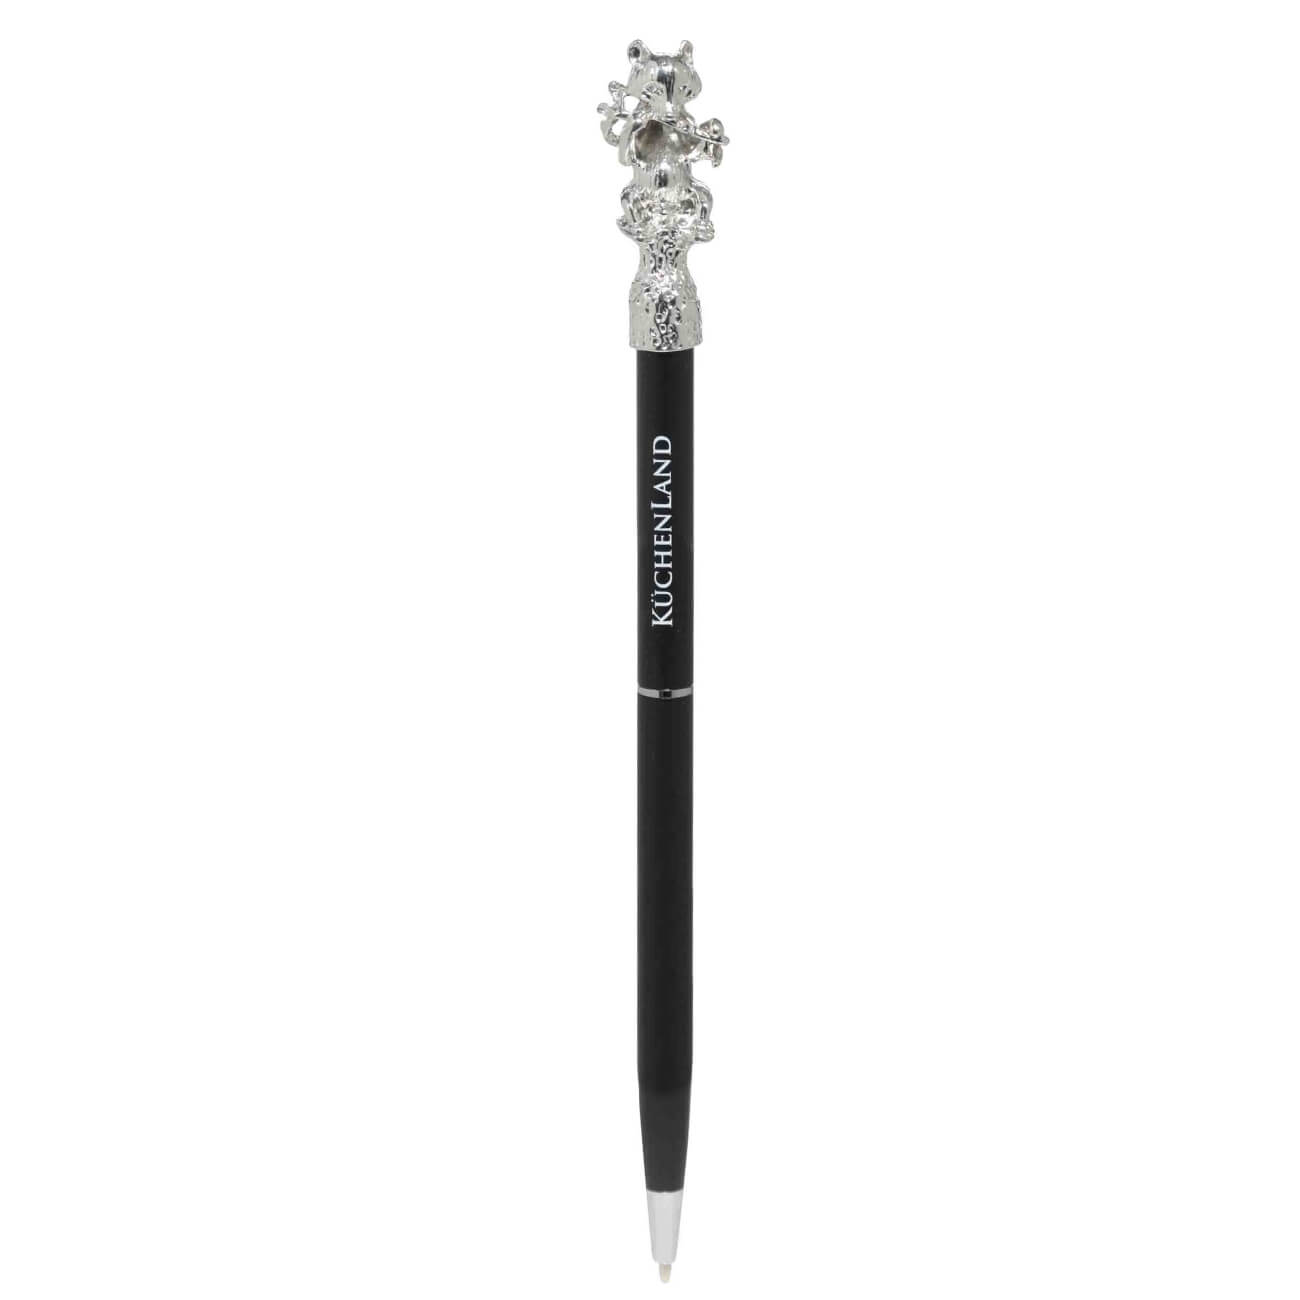 Ручка шариковая, 16 см, с фигуркой, сталь, черная, Панда, Draw figure ручка шариковая 14 см с фигуркой металл белая символ женщины draw figure